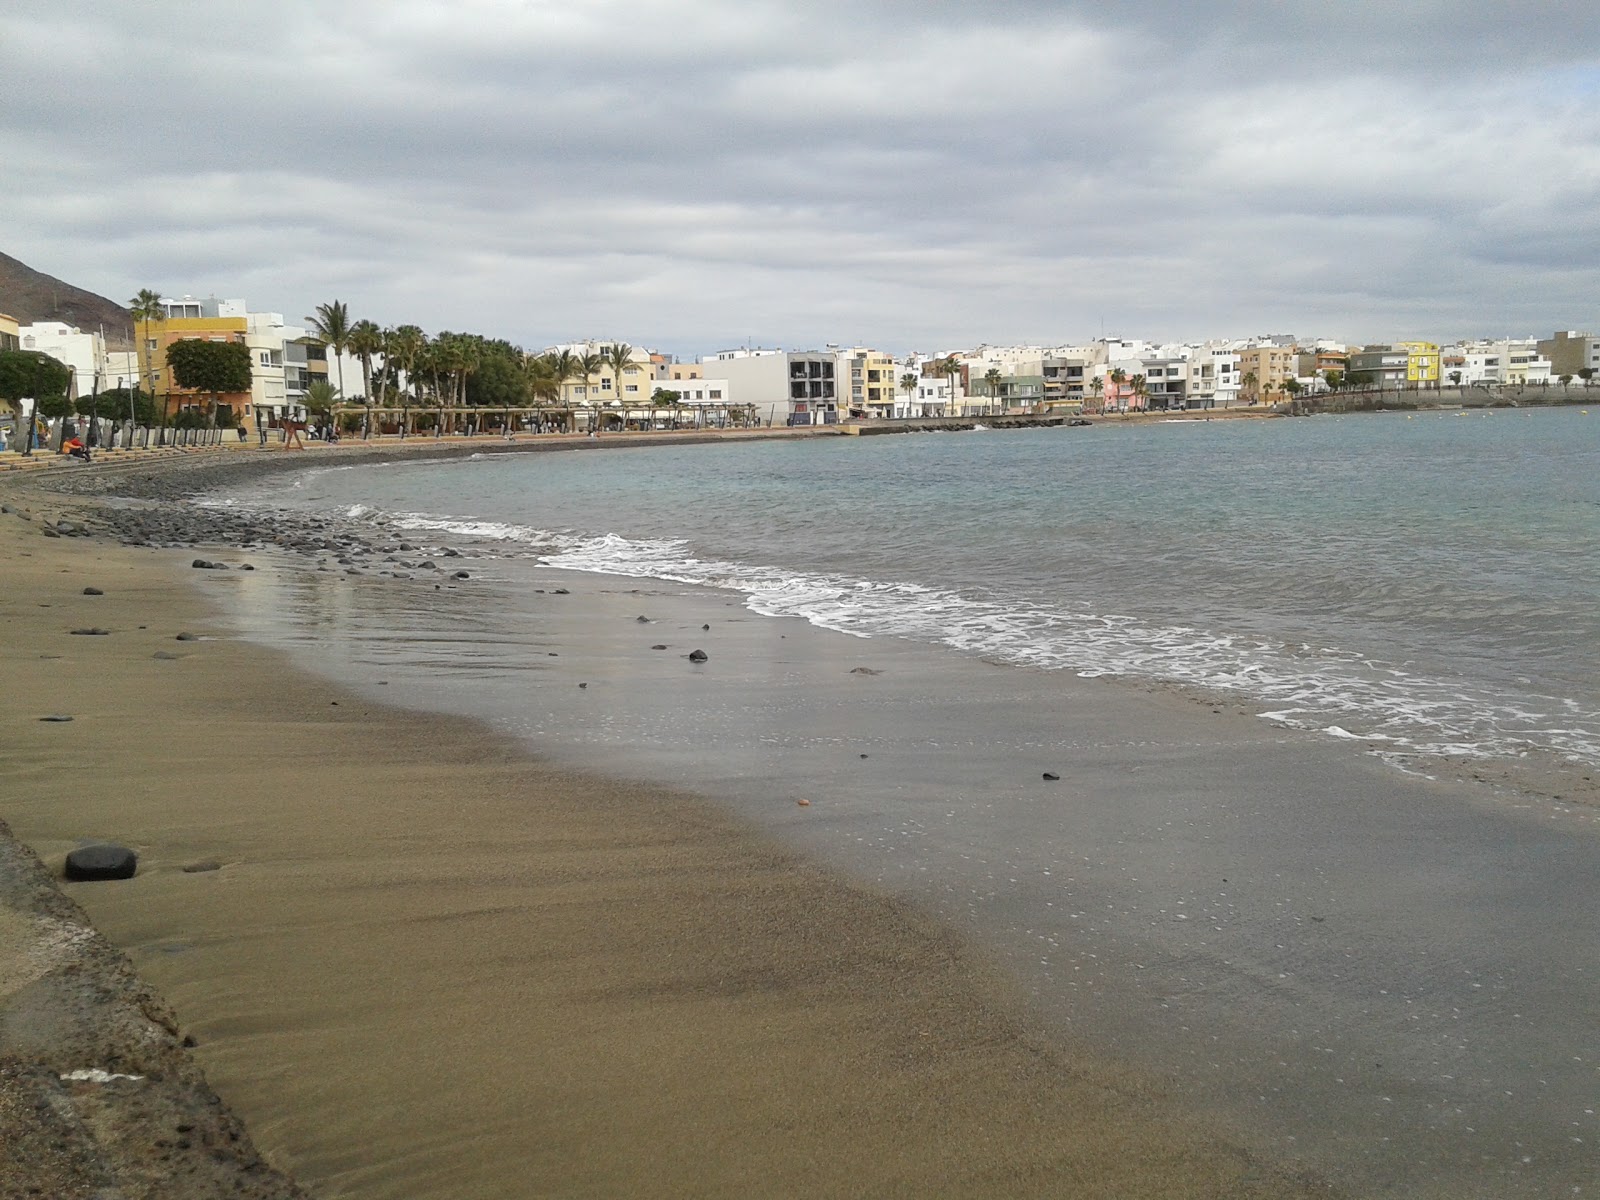 Arinaga Plajı'in fotoğrafı çok temiz temizlik seviyesi ile